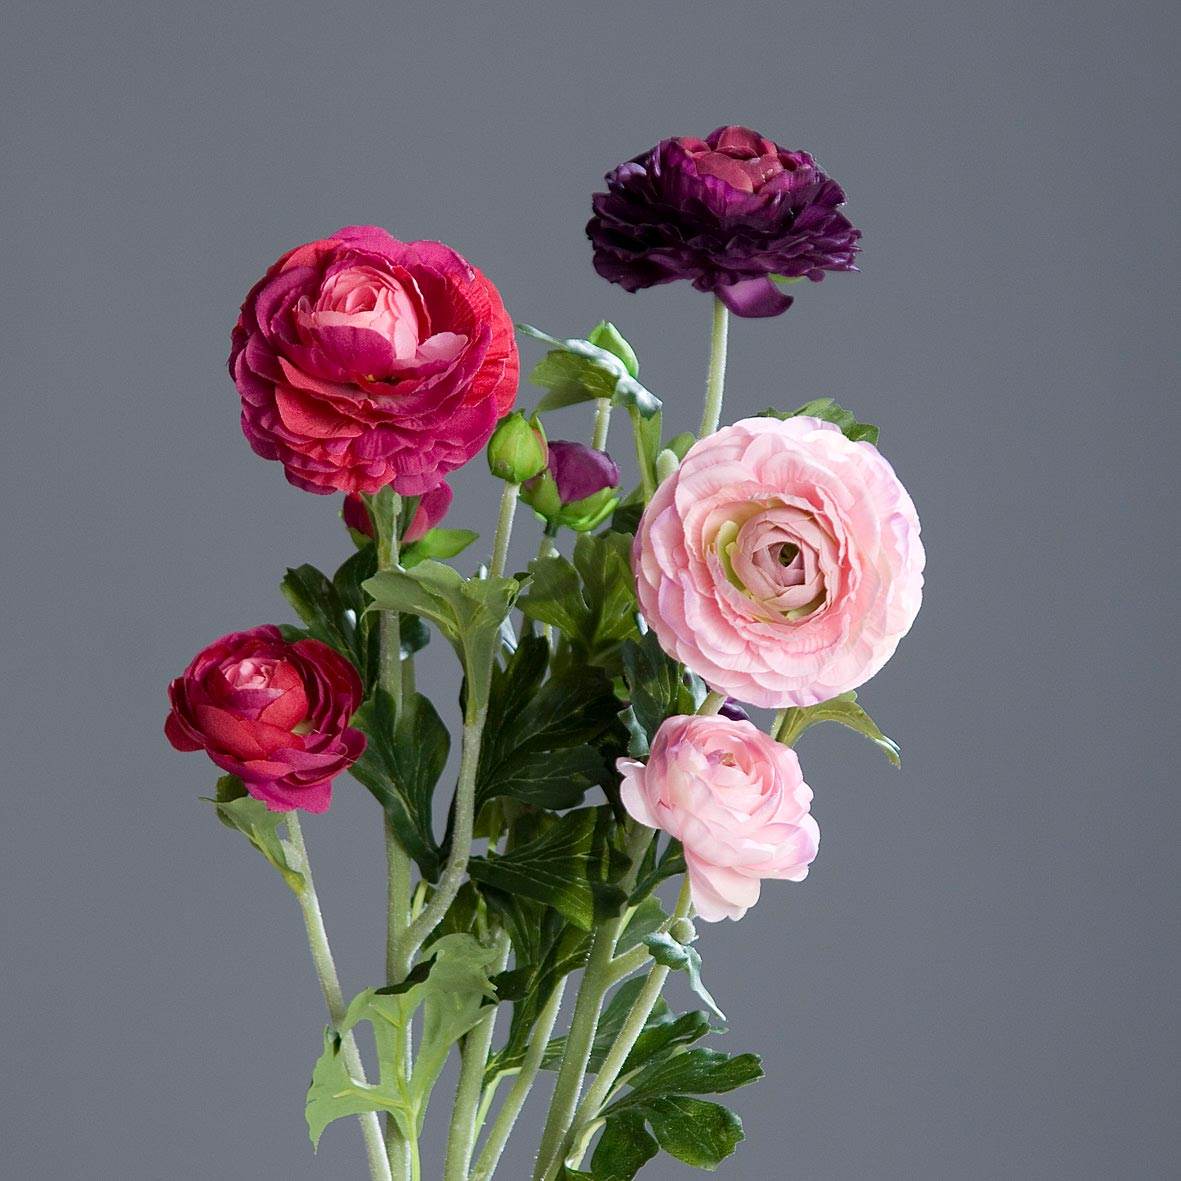 Fukszia, pink és lila színű, 3 különálló szálból álló mű boglárka mix, nyílt és bimbos virágfejekkel.